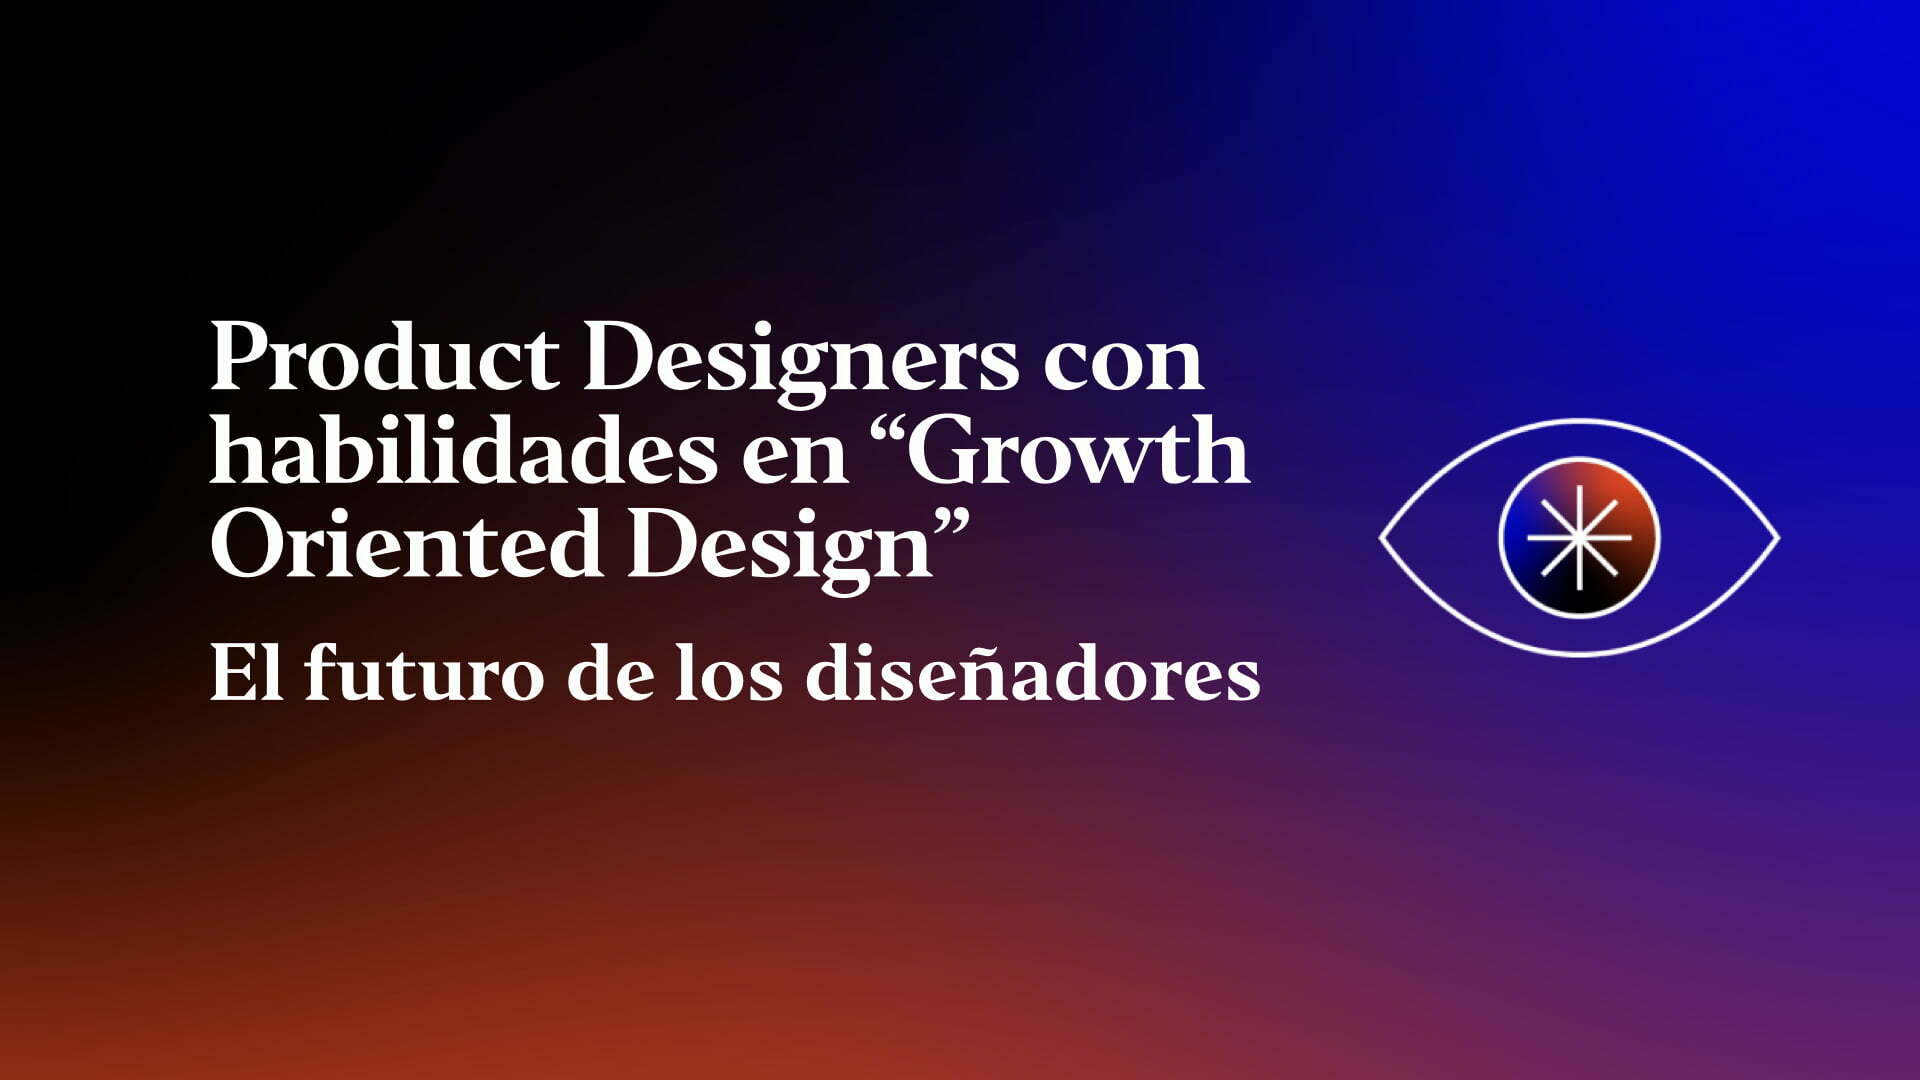 Product Designers con habilidades en “Growth Oriented Design”. El futuro de los diseñadores